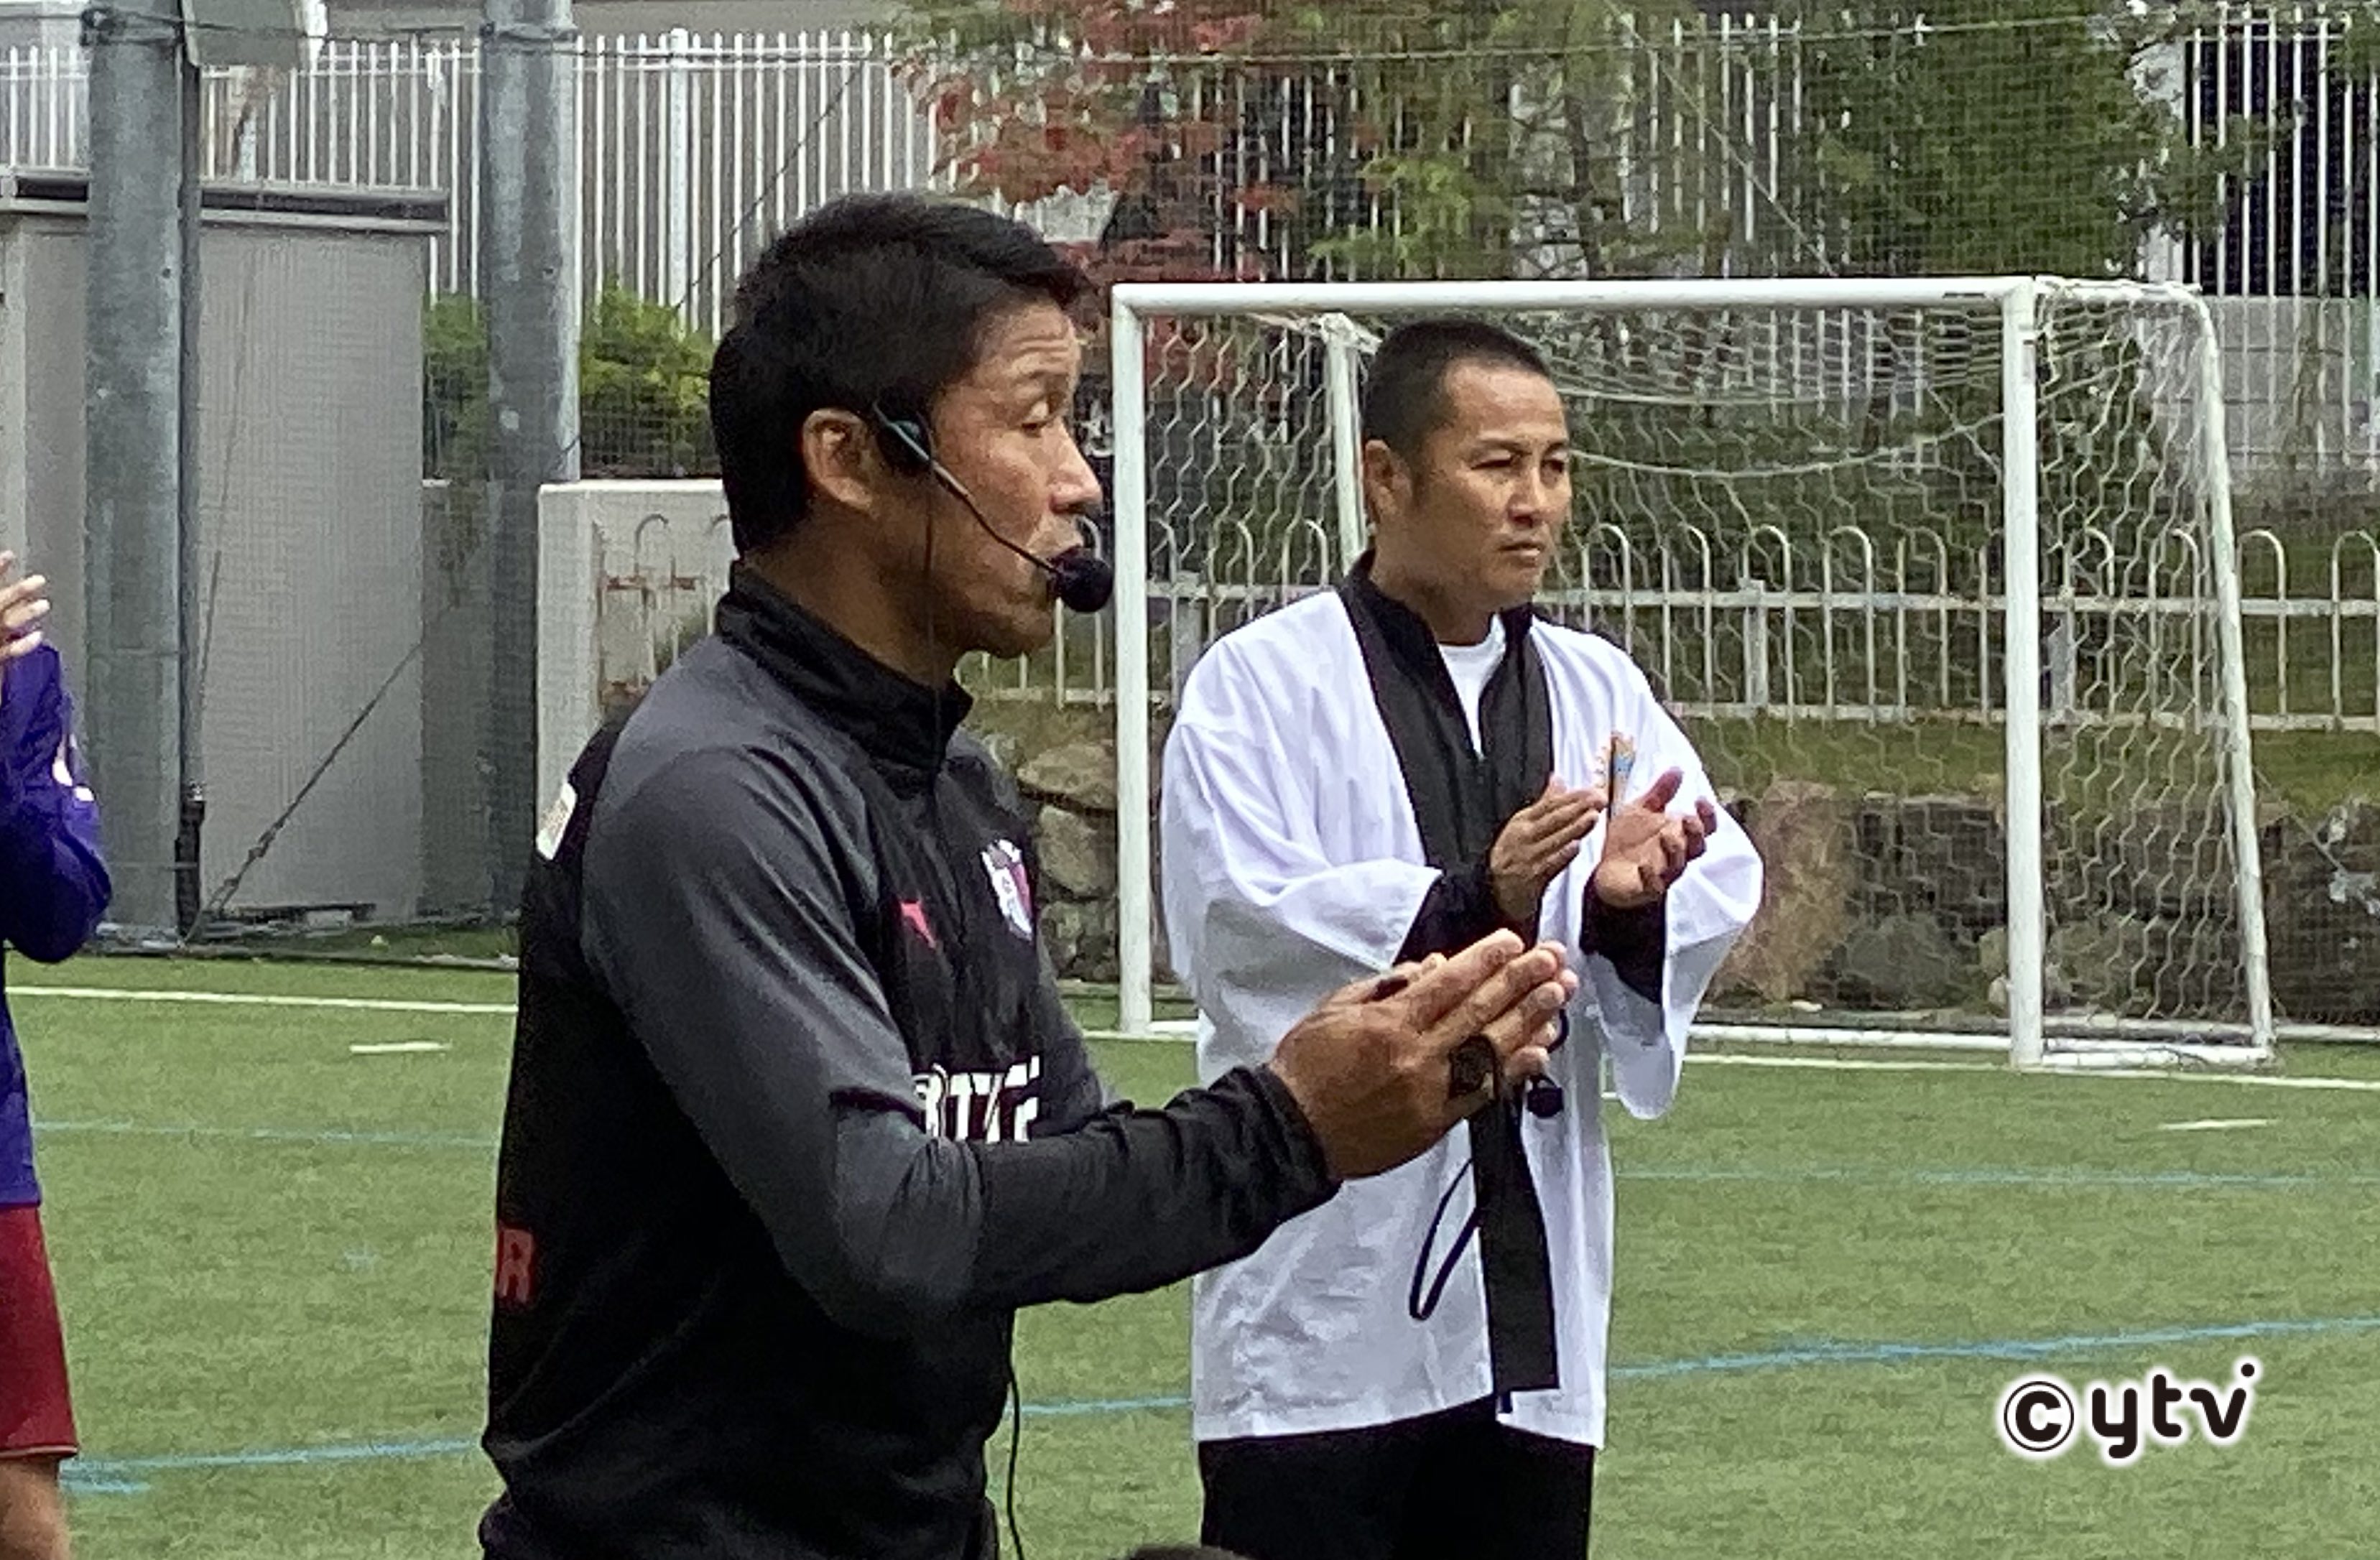 セレッソ大阪 日本サッカーのレジェンドから未来授業 あすリートチャンネル